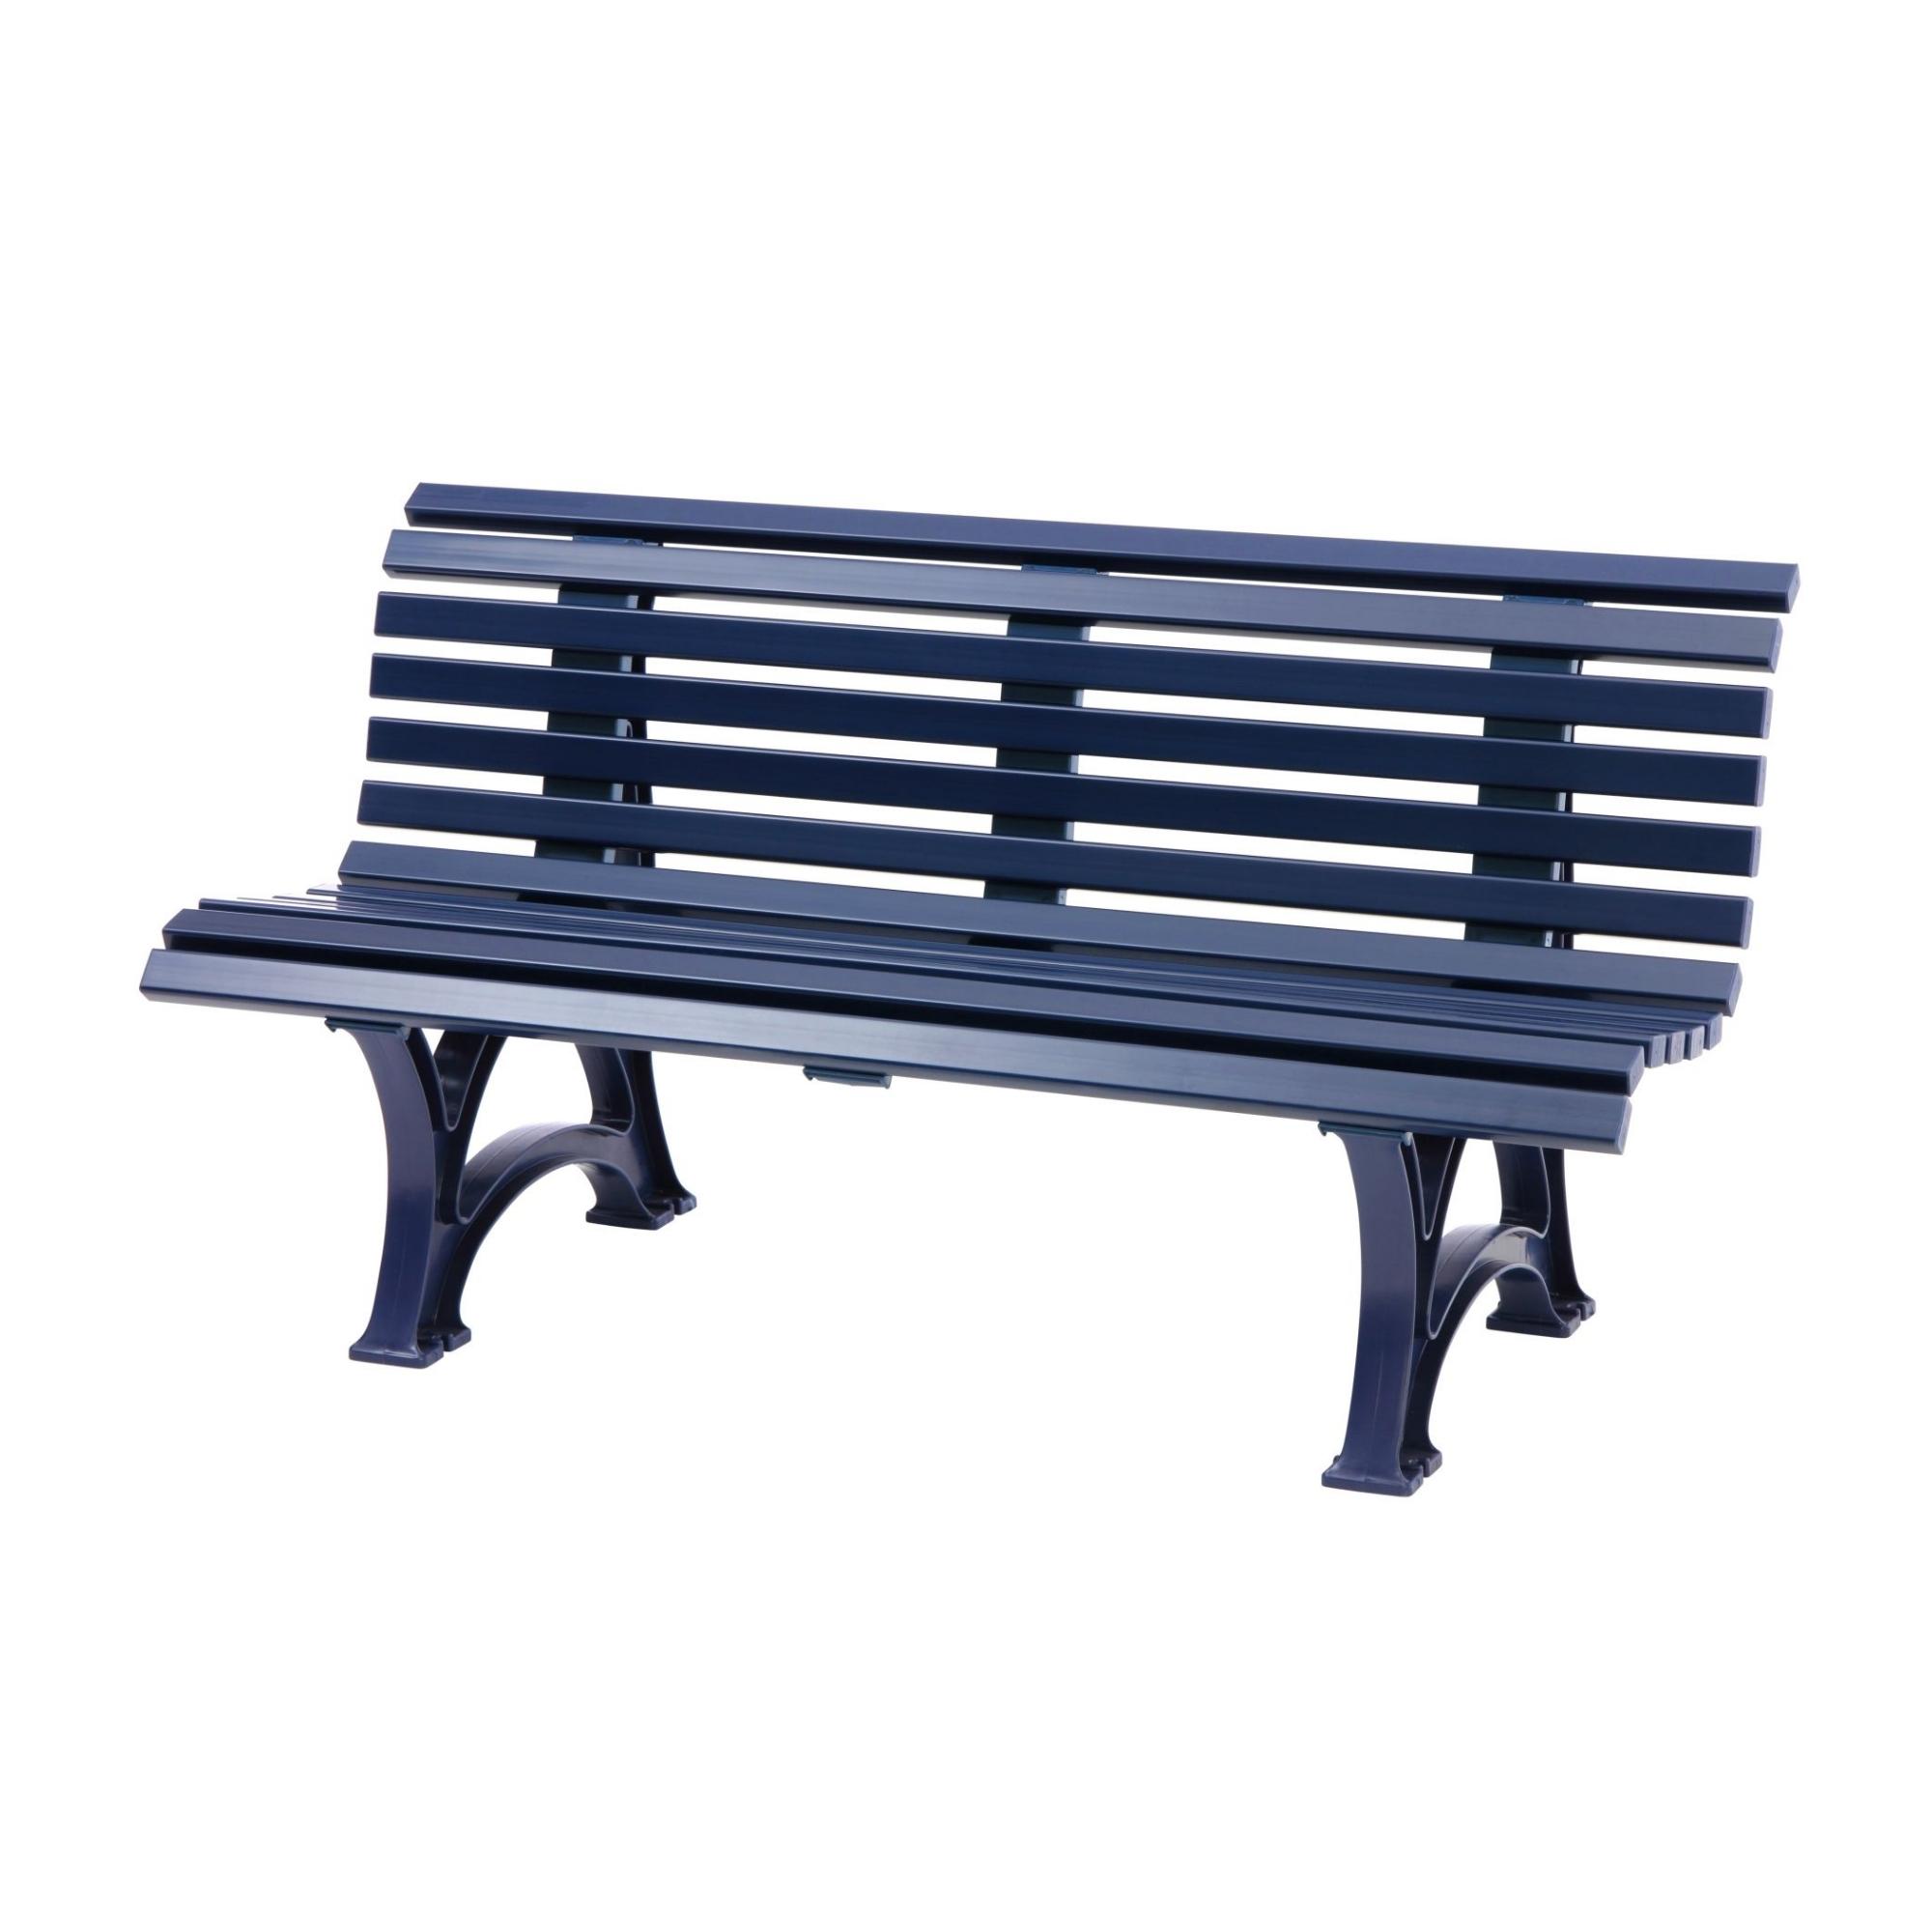 Gartenbank Jamaika | 3-Sitzer | Blau | HxBxT 80x150x64cm | Witterungs- & UV-beständiger Kunststoff | Parkbank Sitzbank Außenbereich Garten Balkon Terrasse